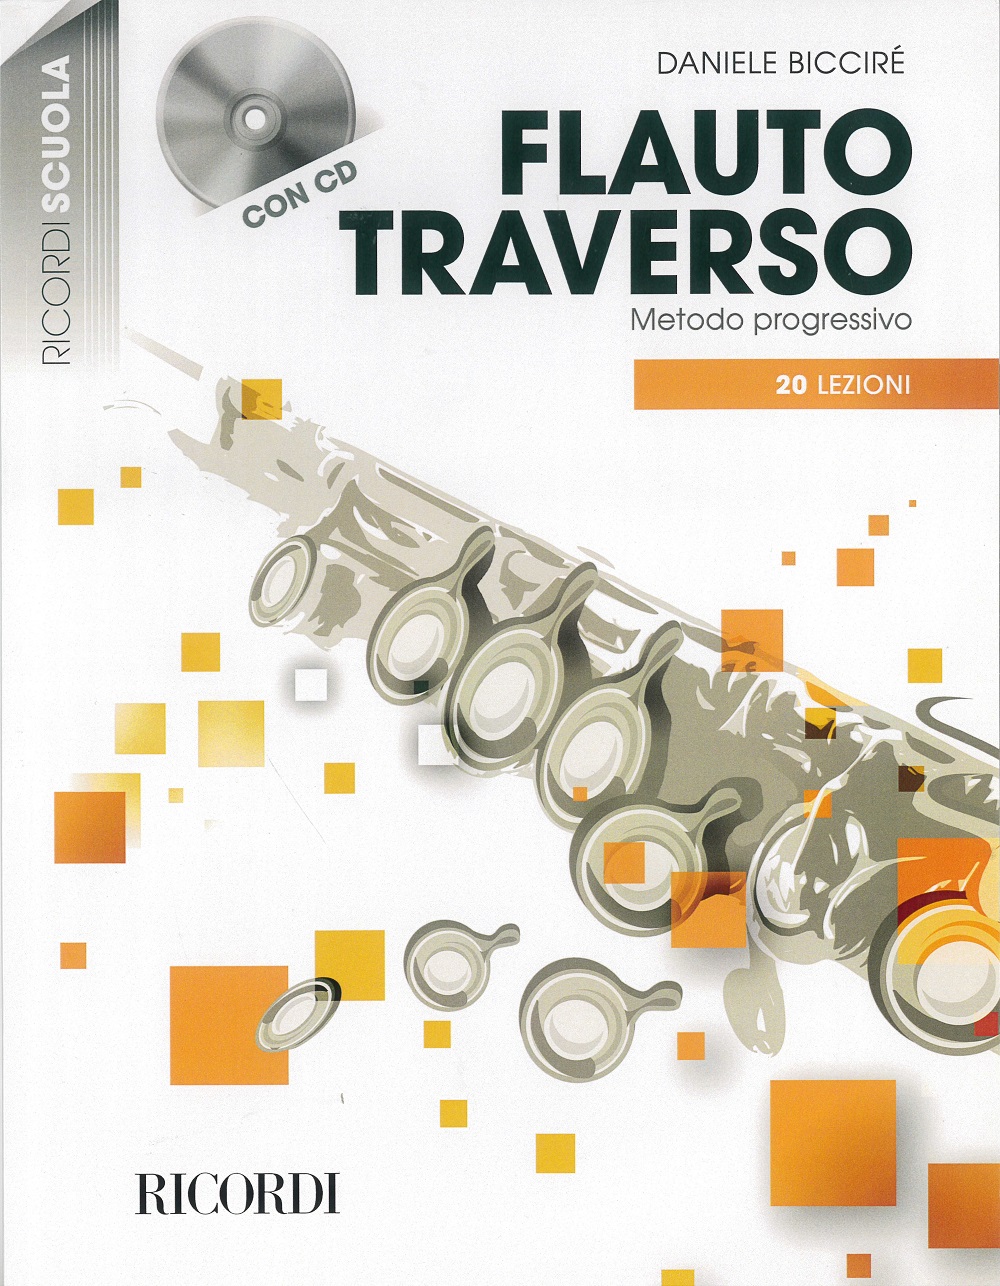 Flauto traverso - Metodo progressivo in 20 lezioni: Flute